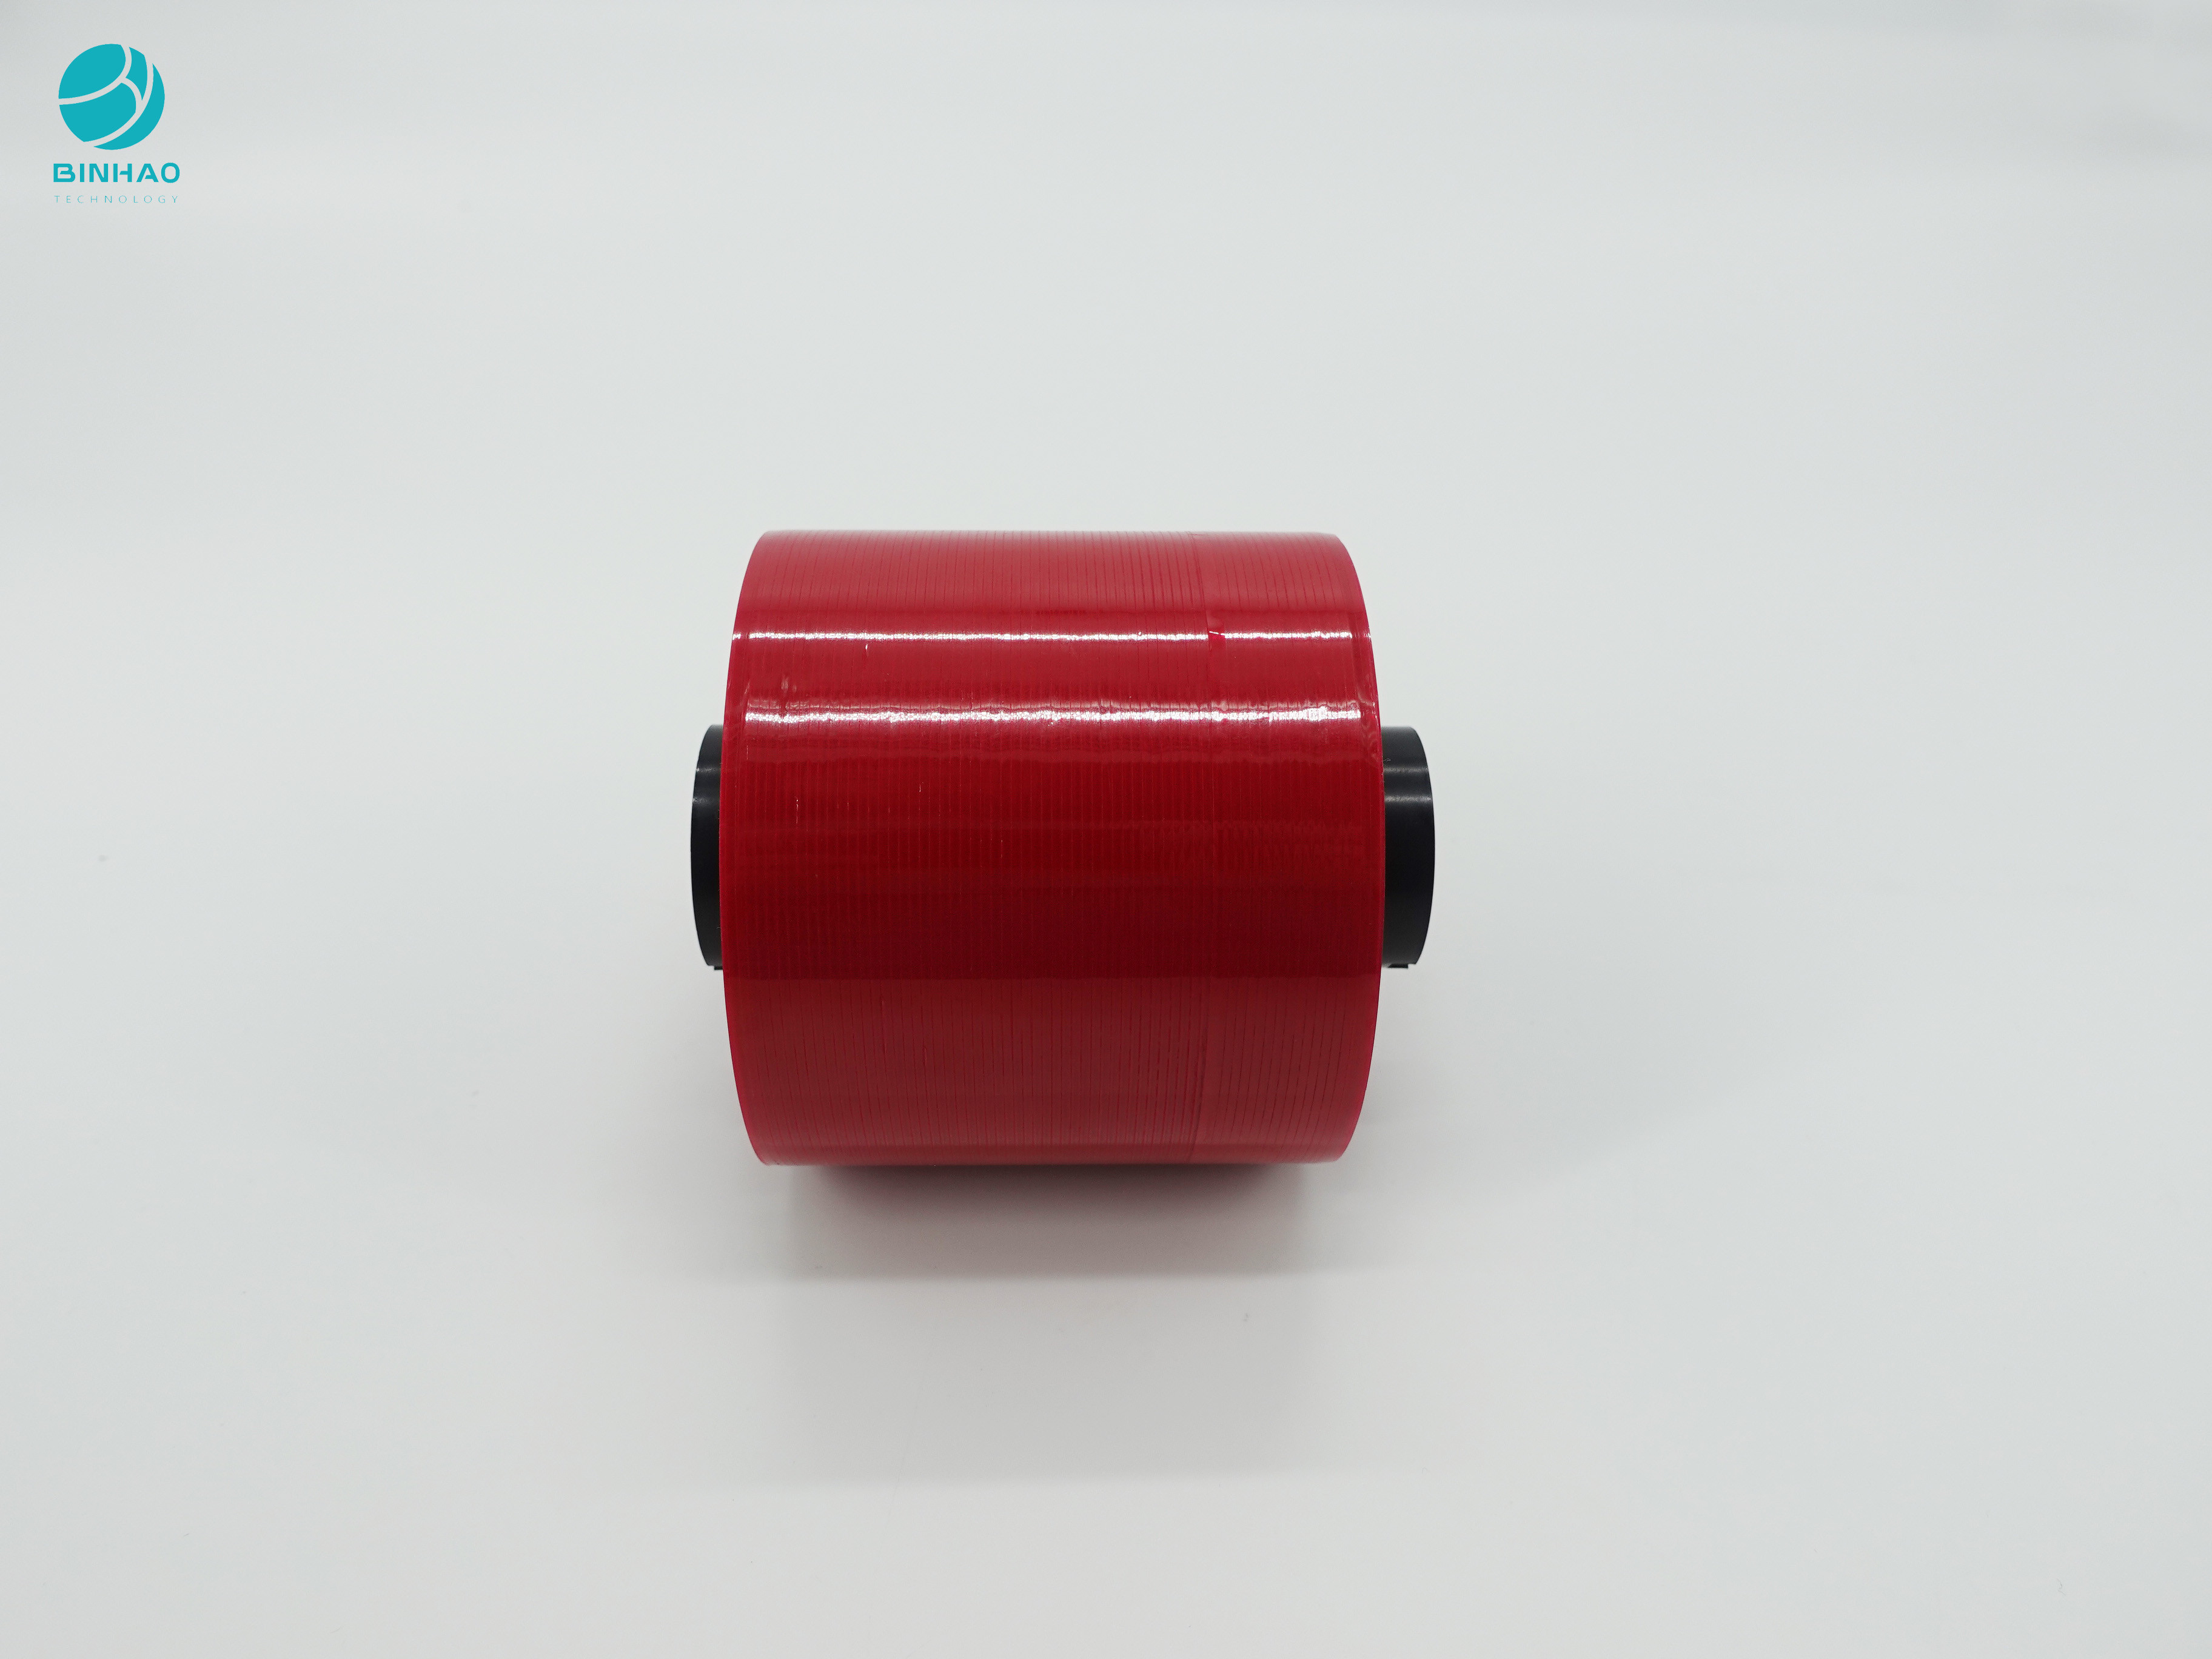 Özel Boyut ve Renkli 3mm Kutu Şekli Ürün Ambalajı Holografik Gözyaşı Bandı